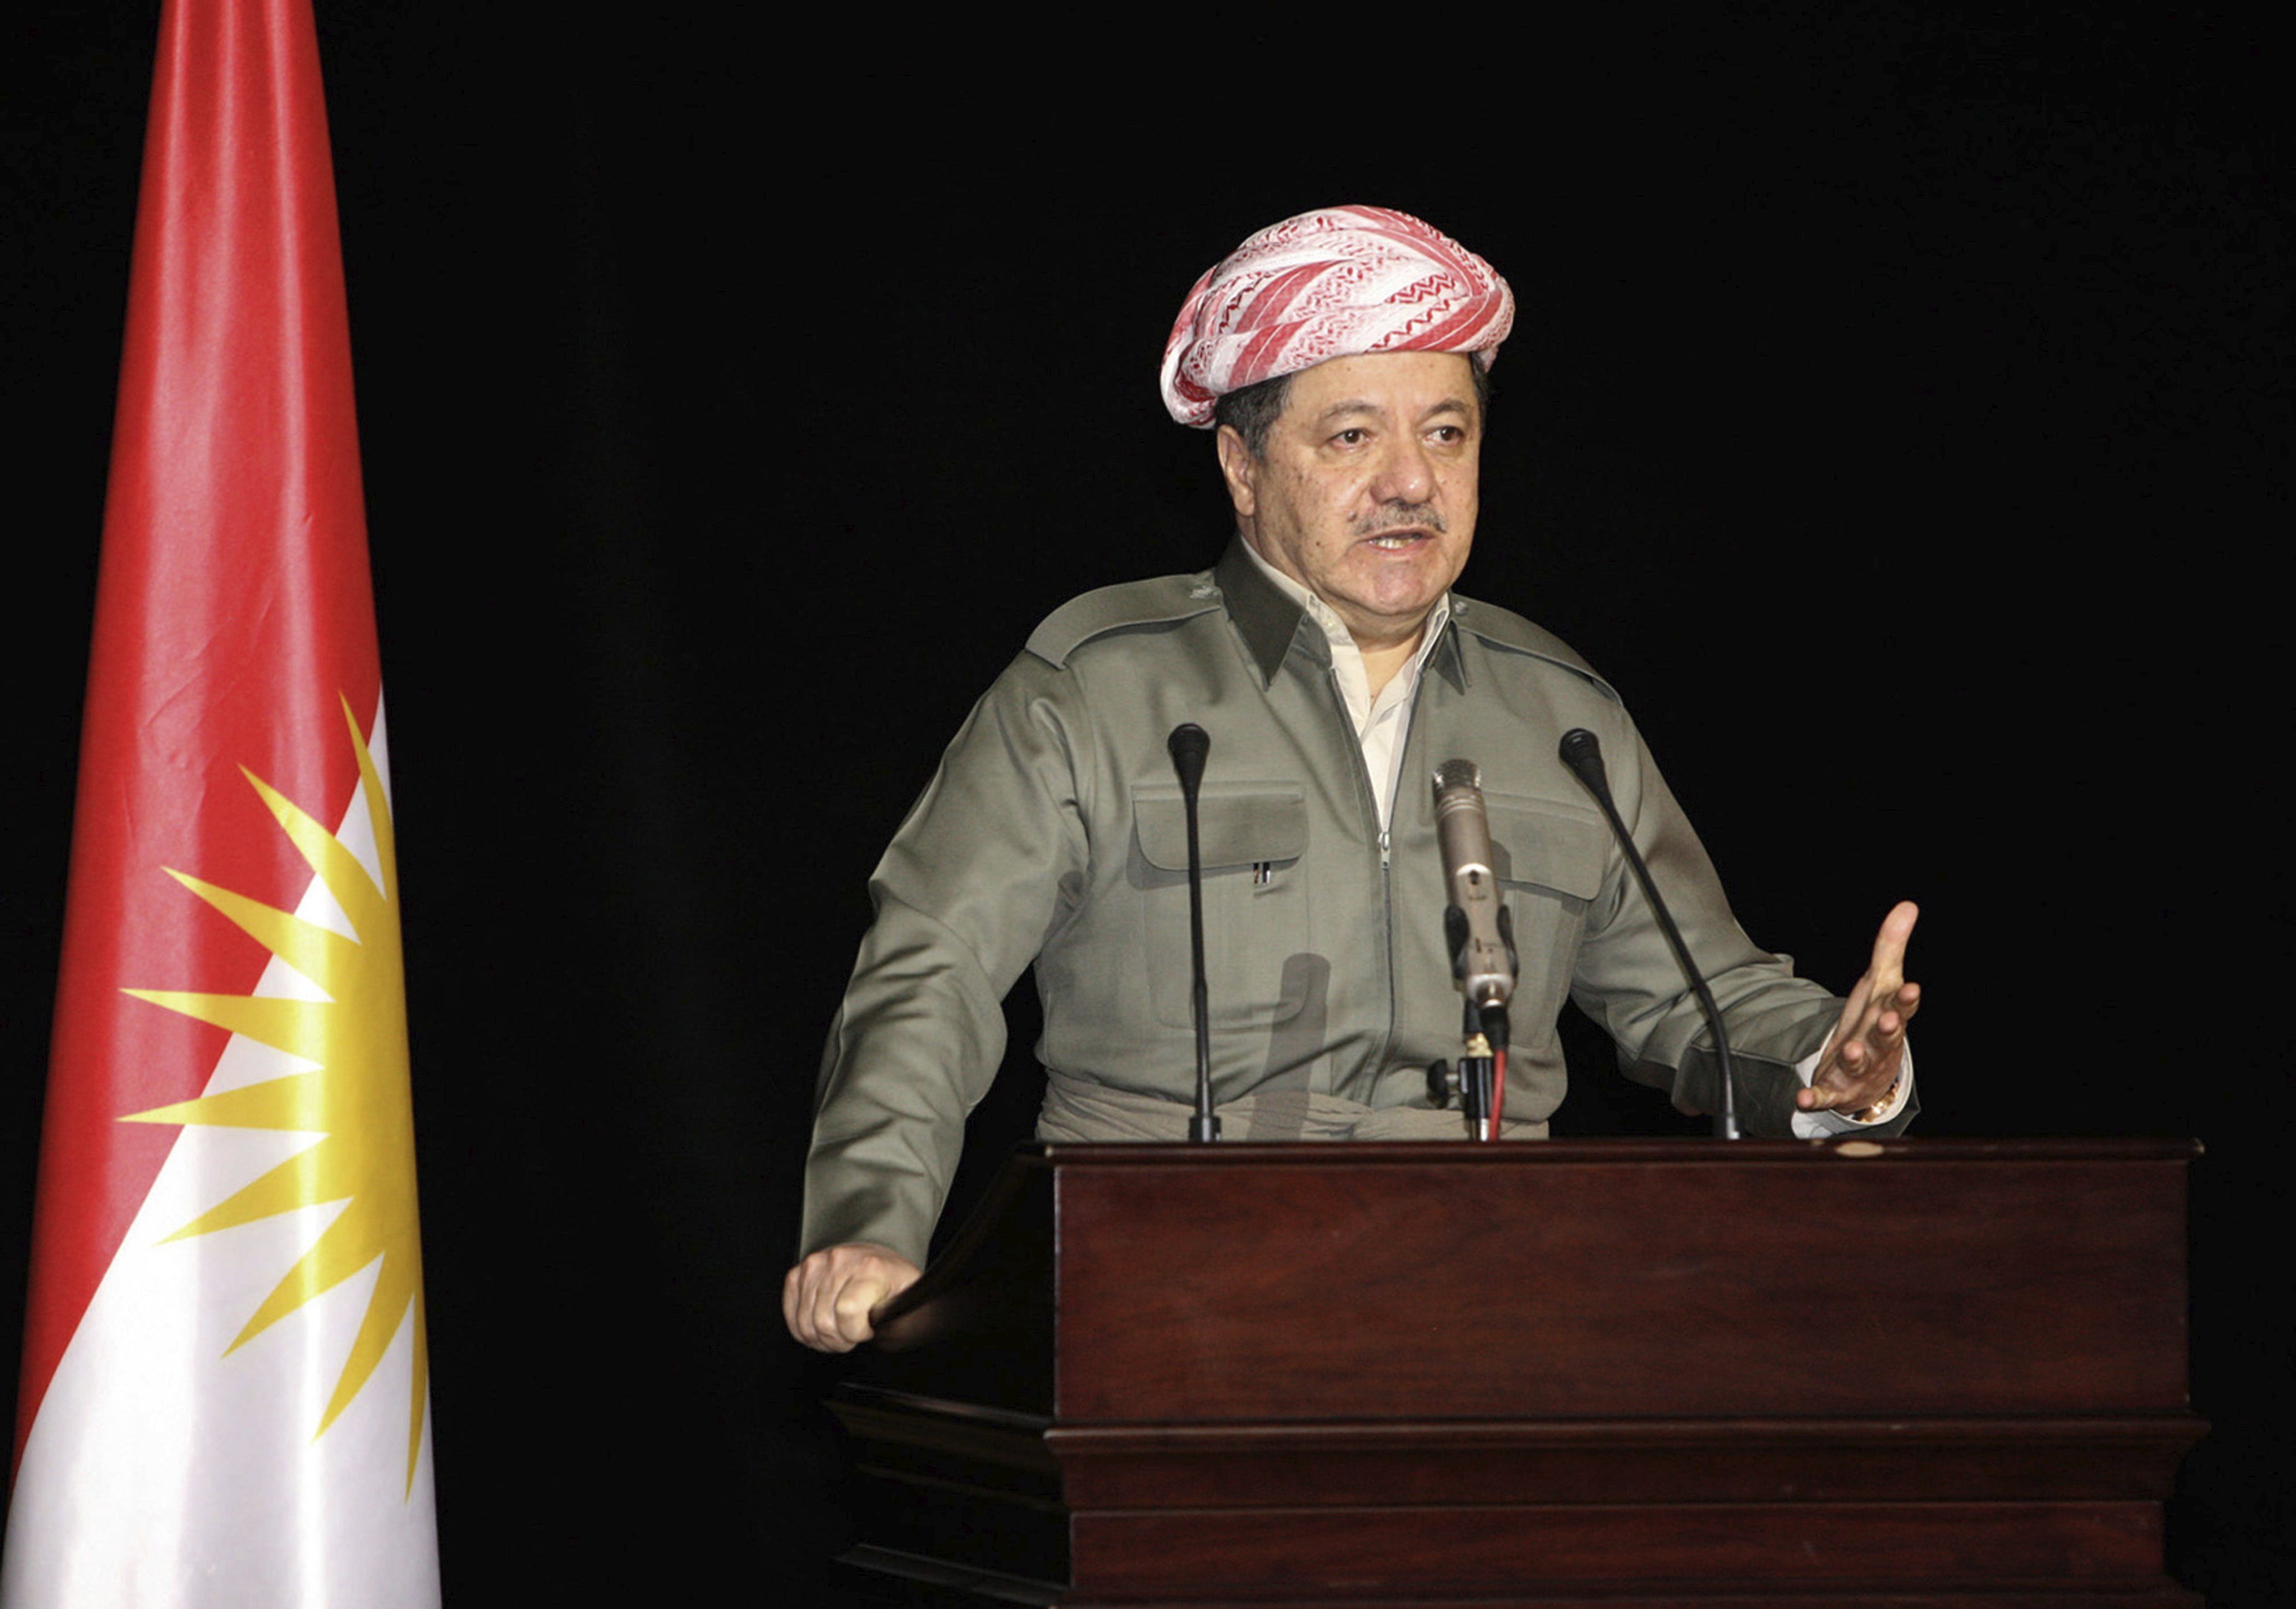 Kurdistán: Presidente llama celebrar a referendo por la independencia